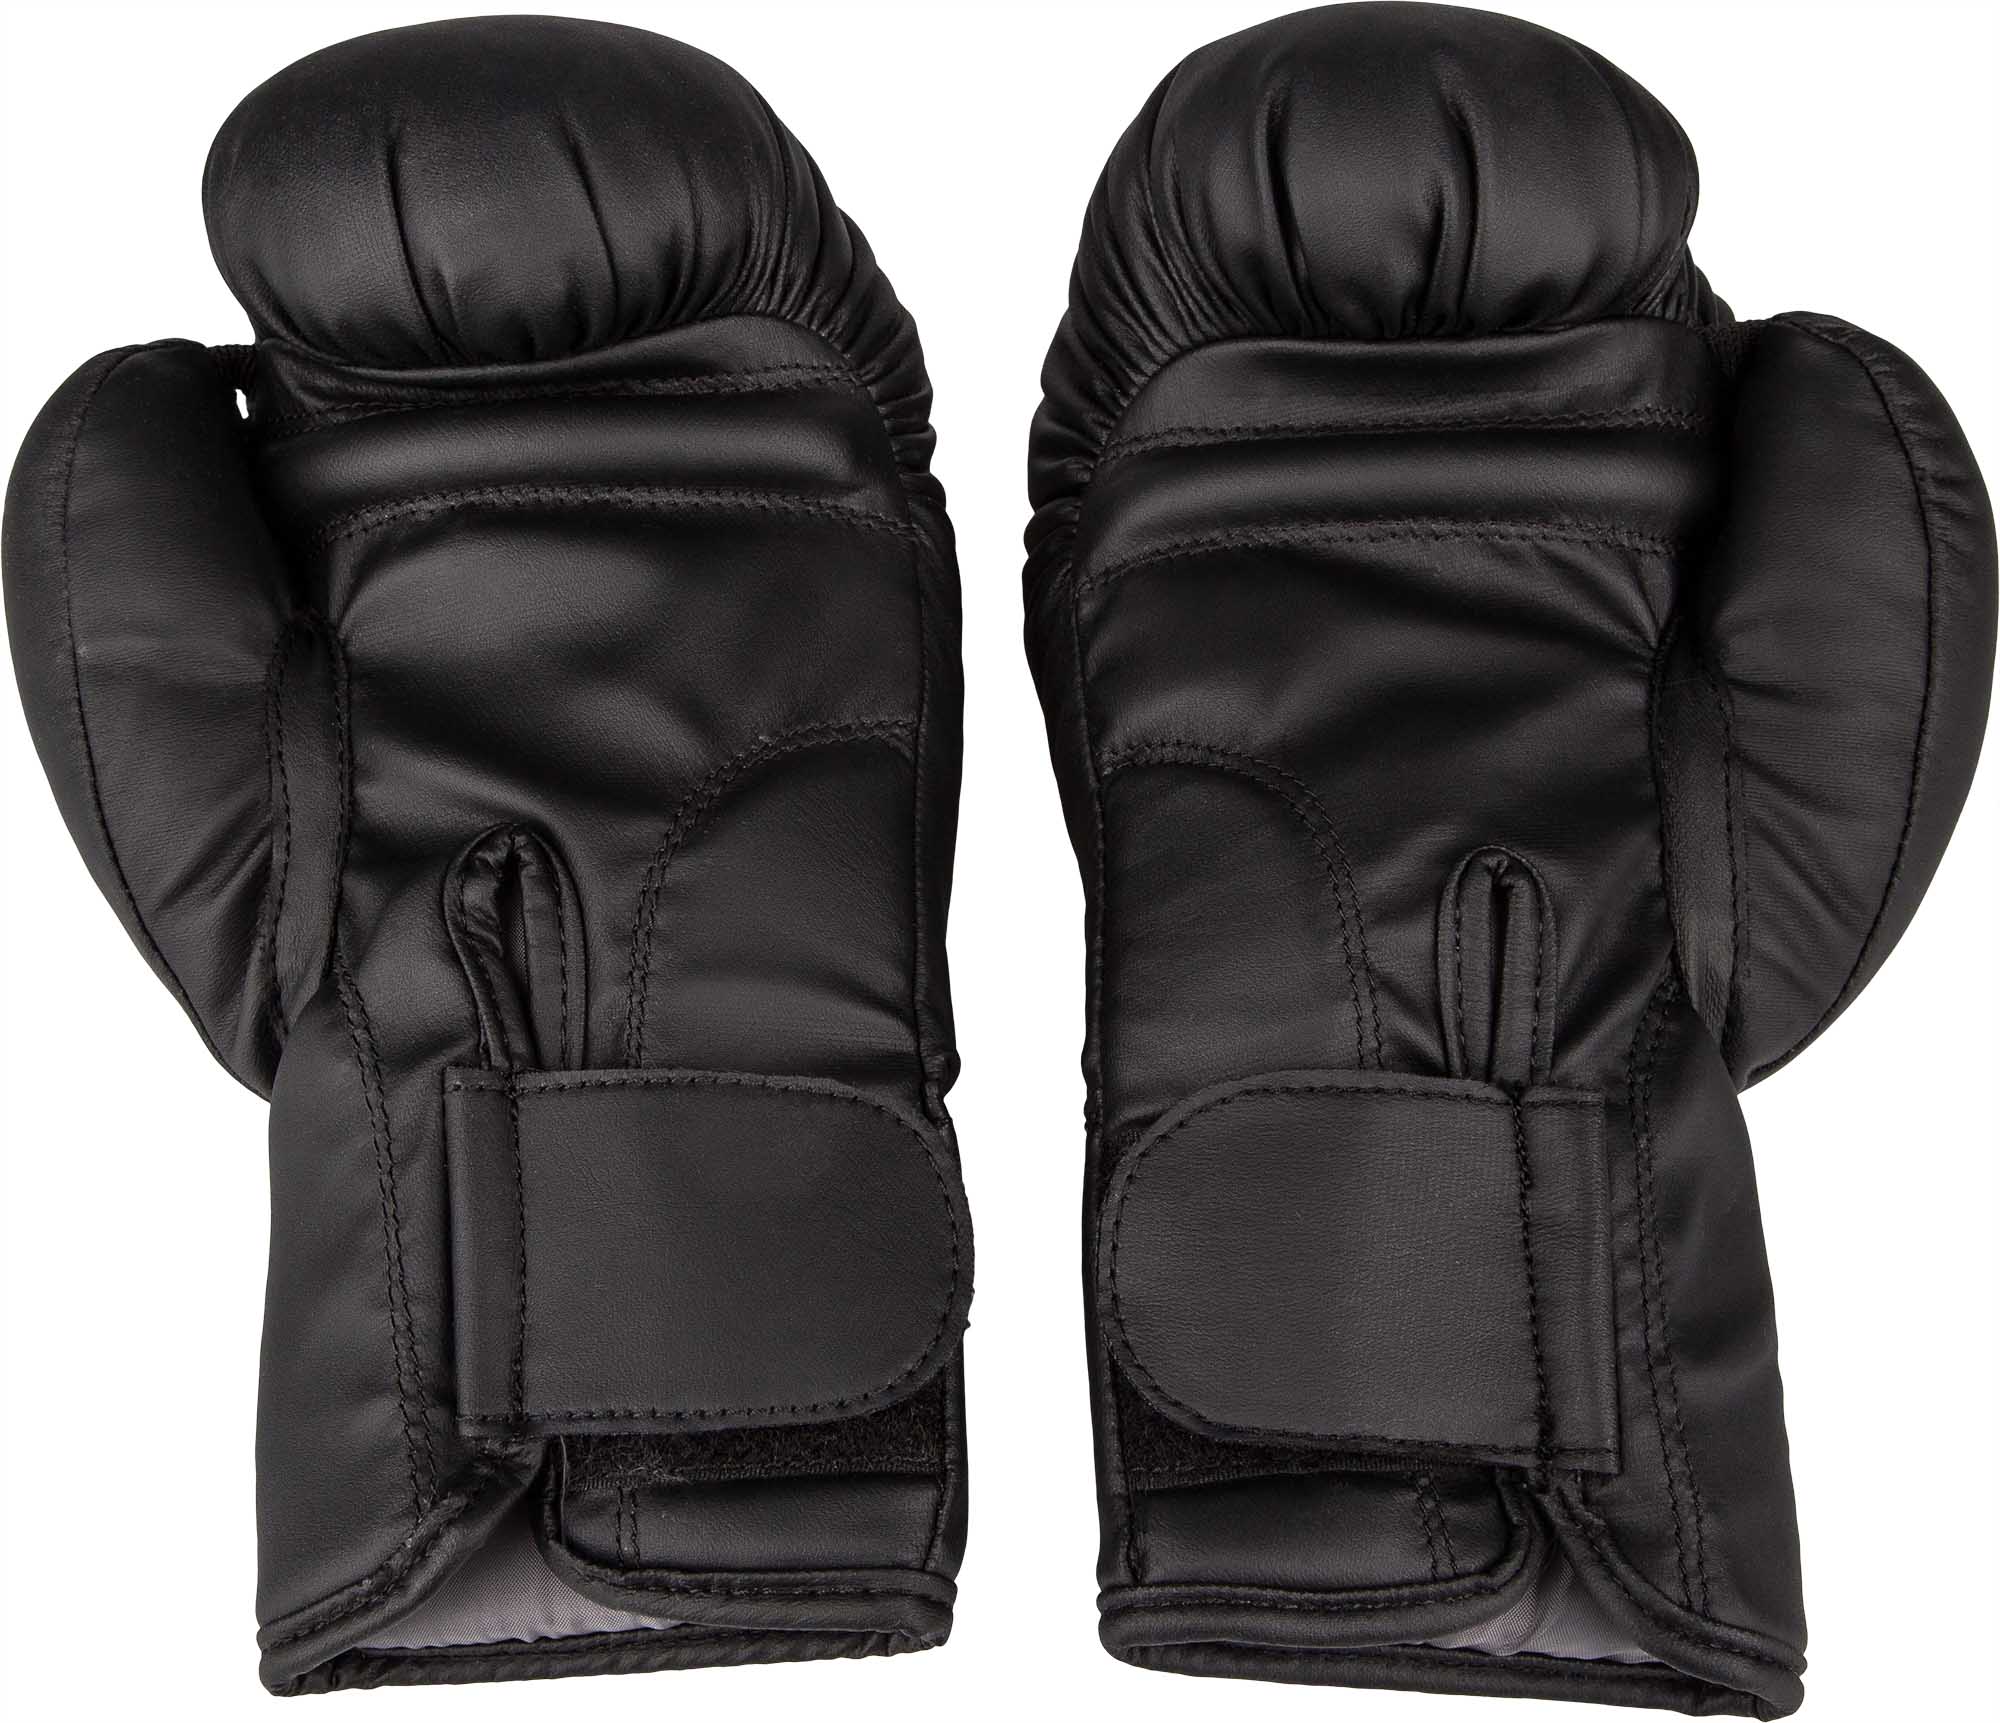 Juniorské boxerské rukavice s pytlem